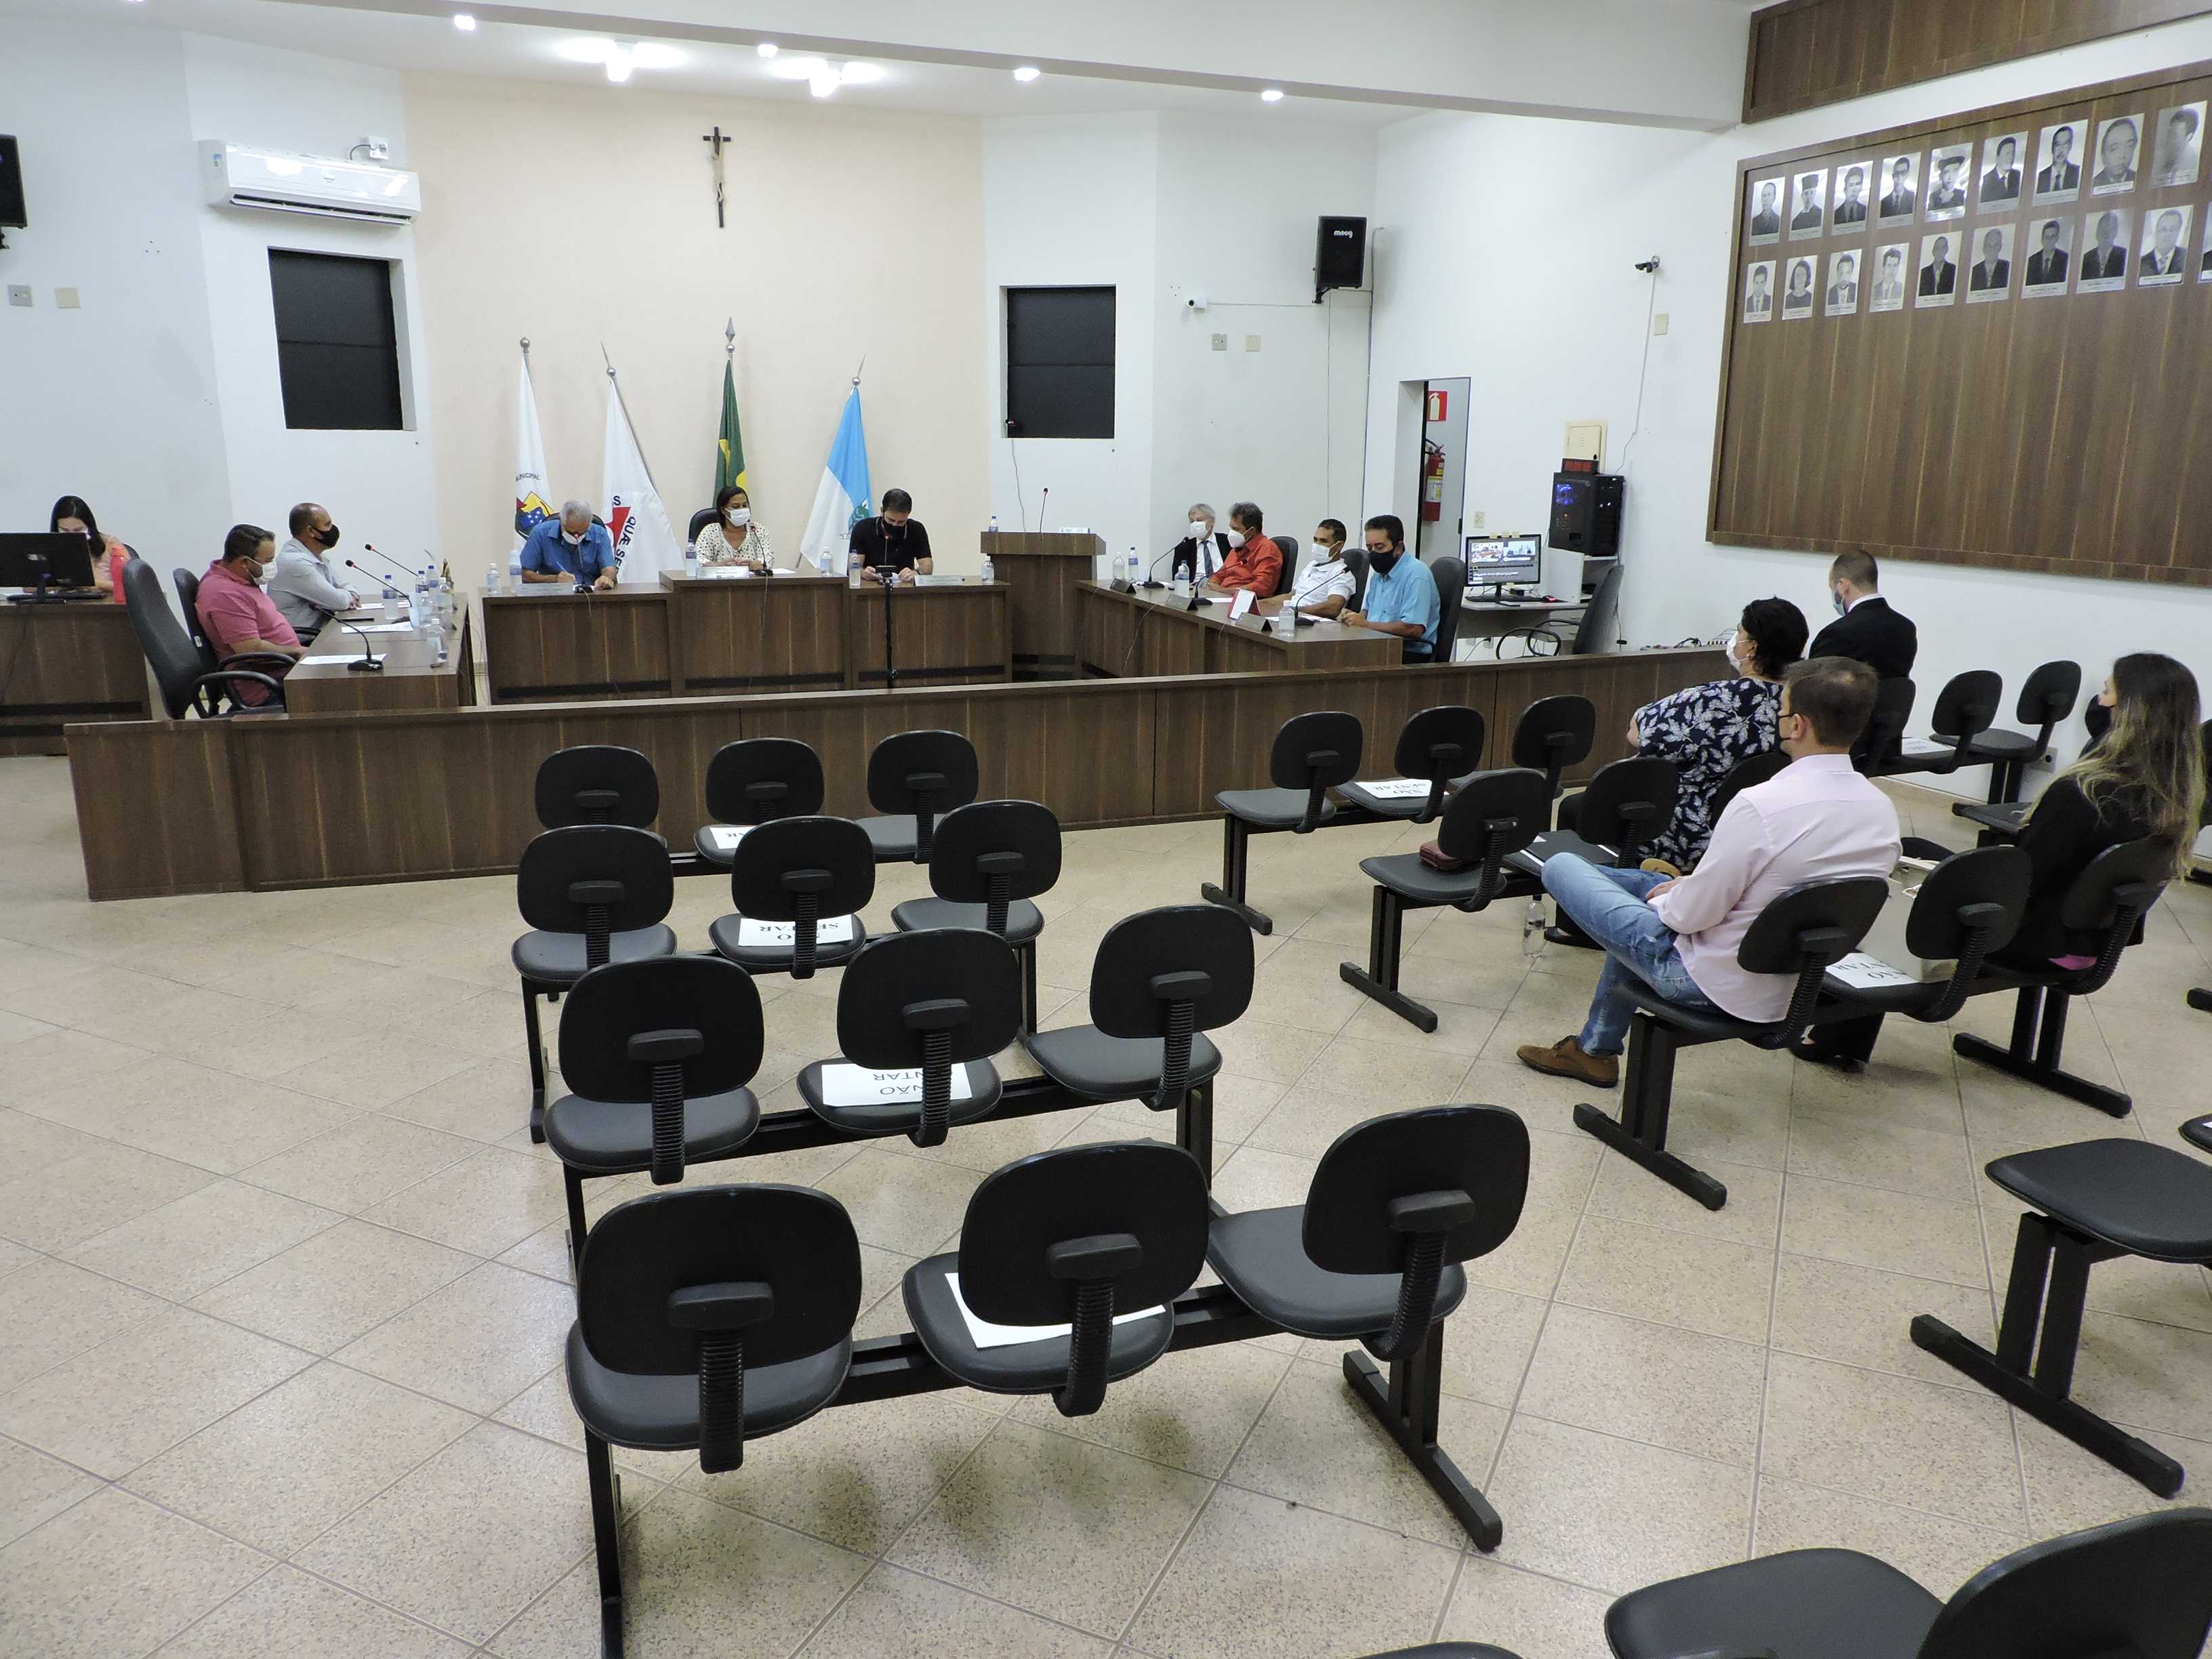 Câmara Municipal de Guapé - Reunião entre Legislativo e Executivo